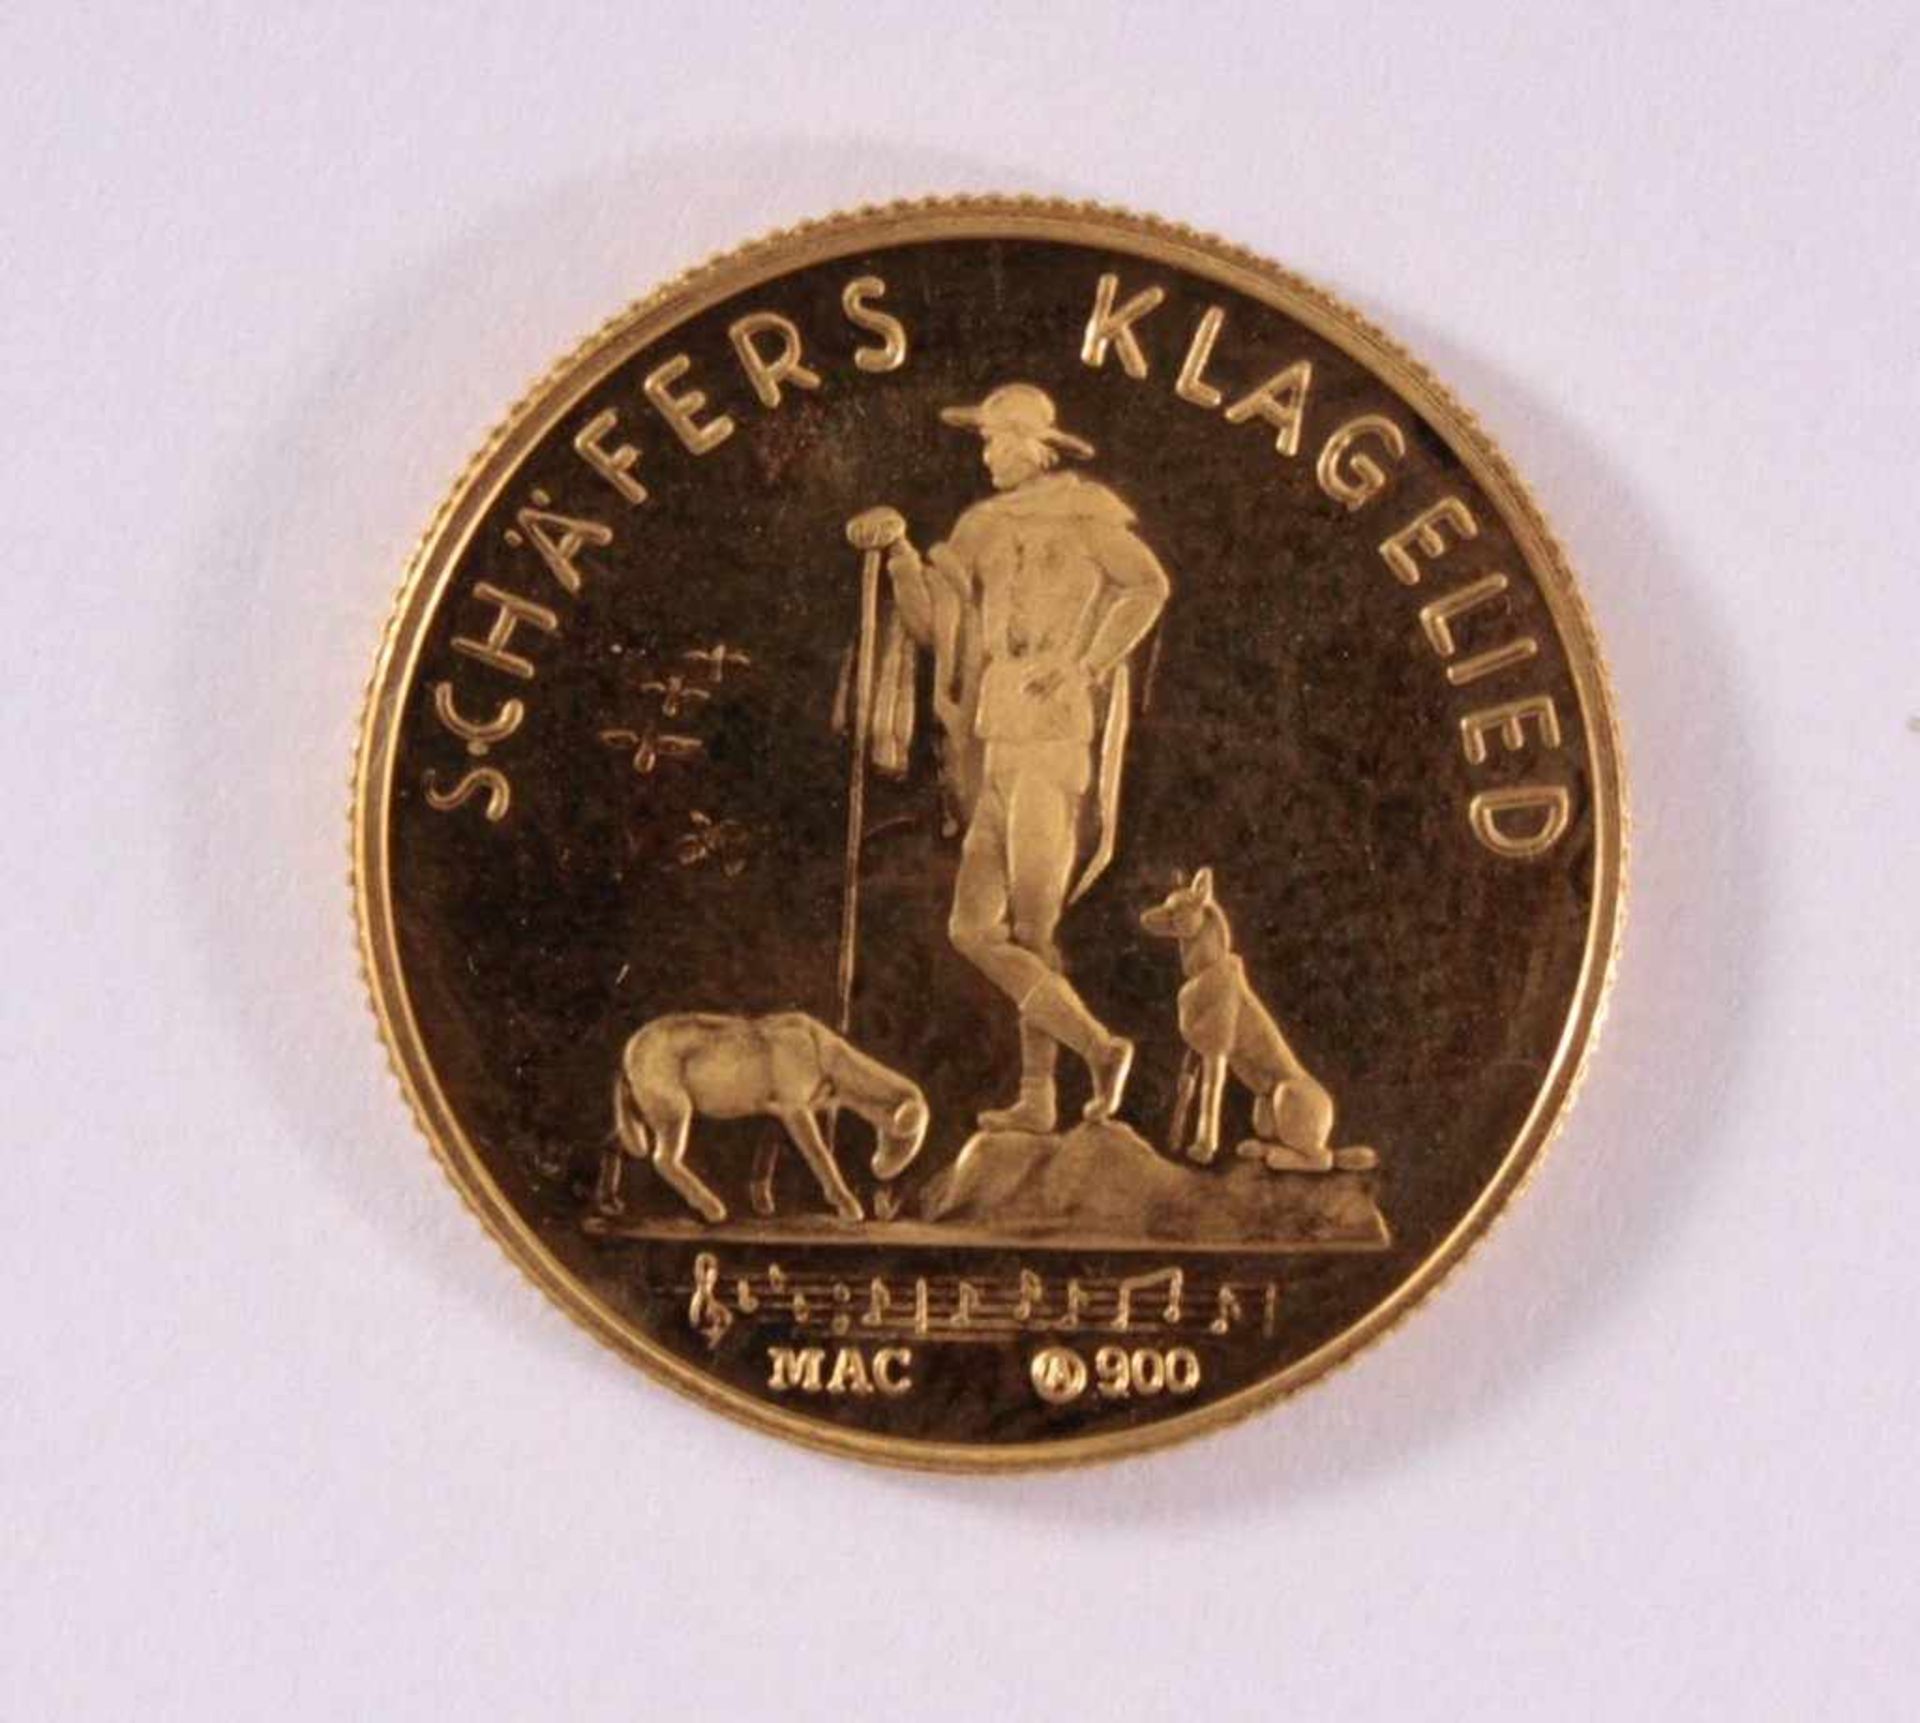 Goldmedaille 900/000 GG. Franz SchubertD-2,1 cm, 5 g - Bild 2 aus 2